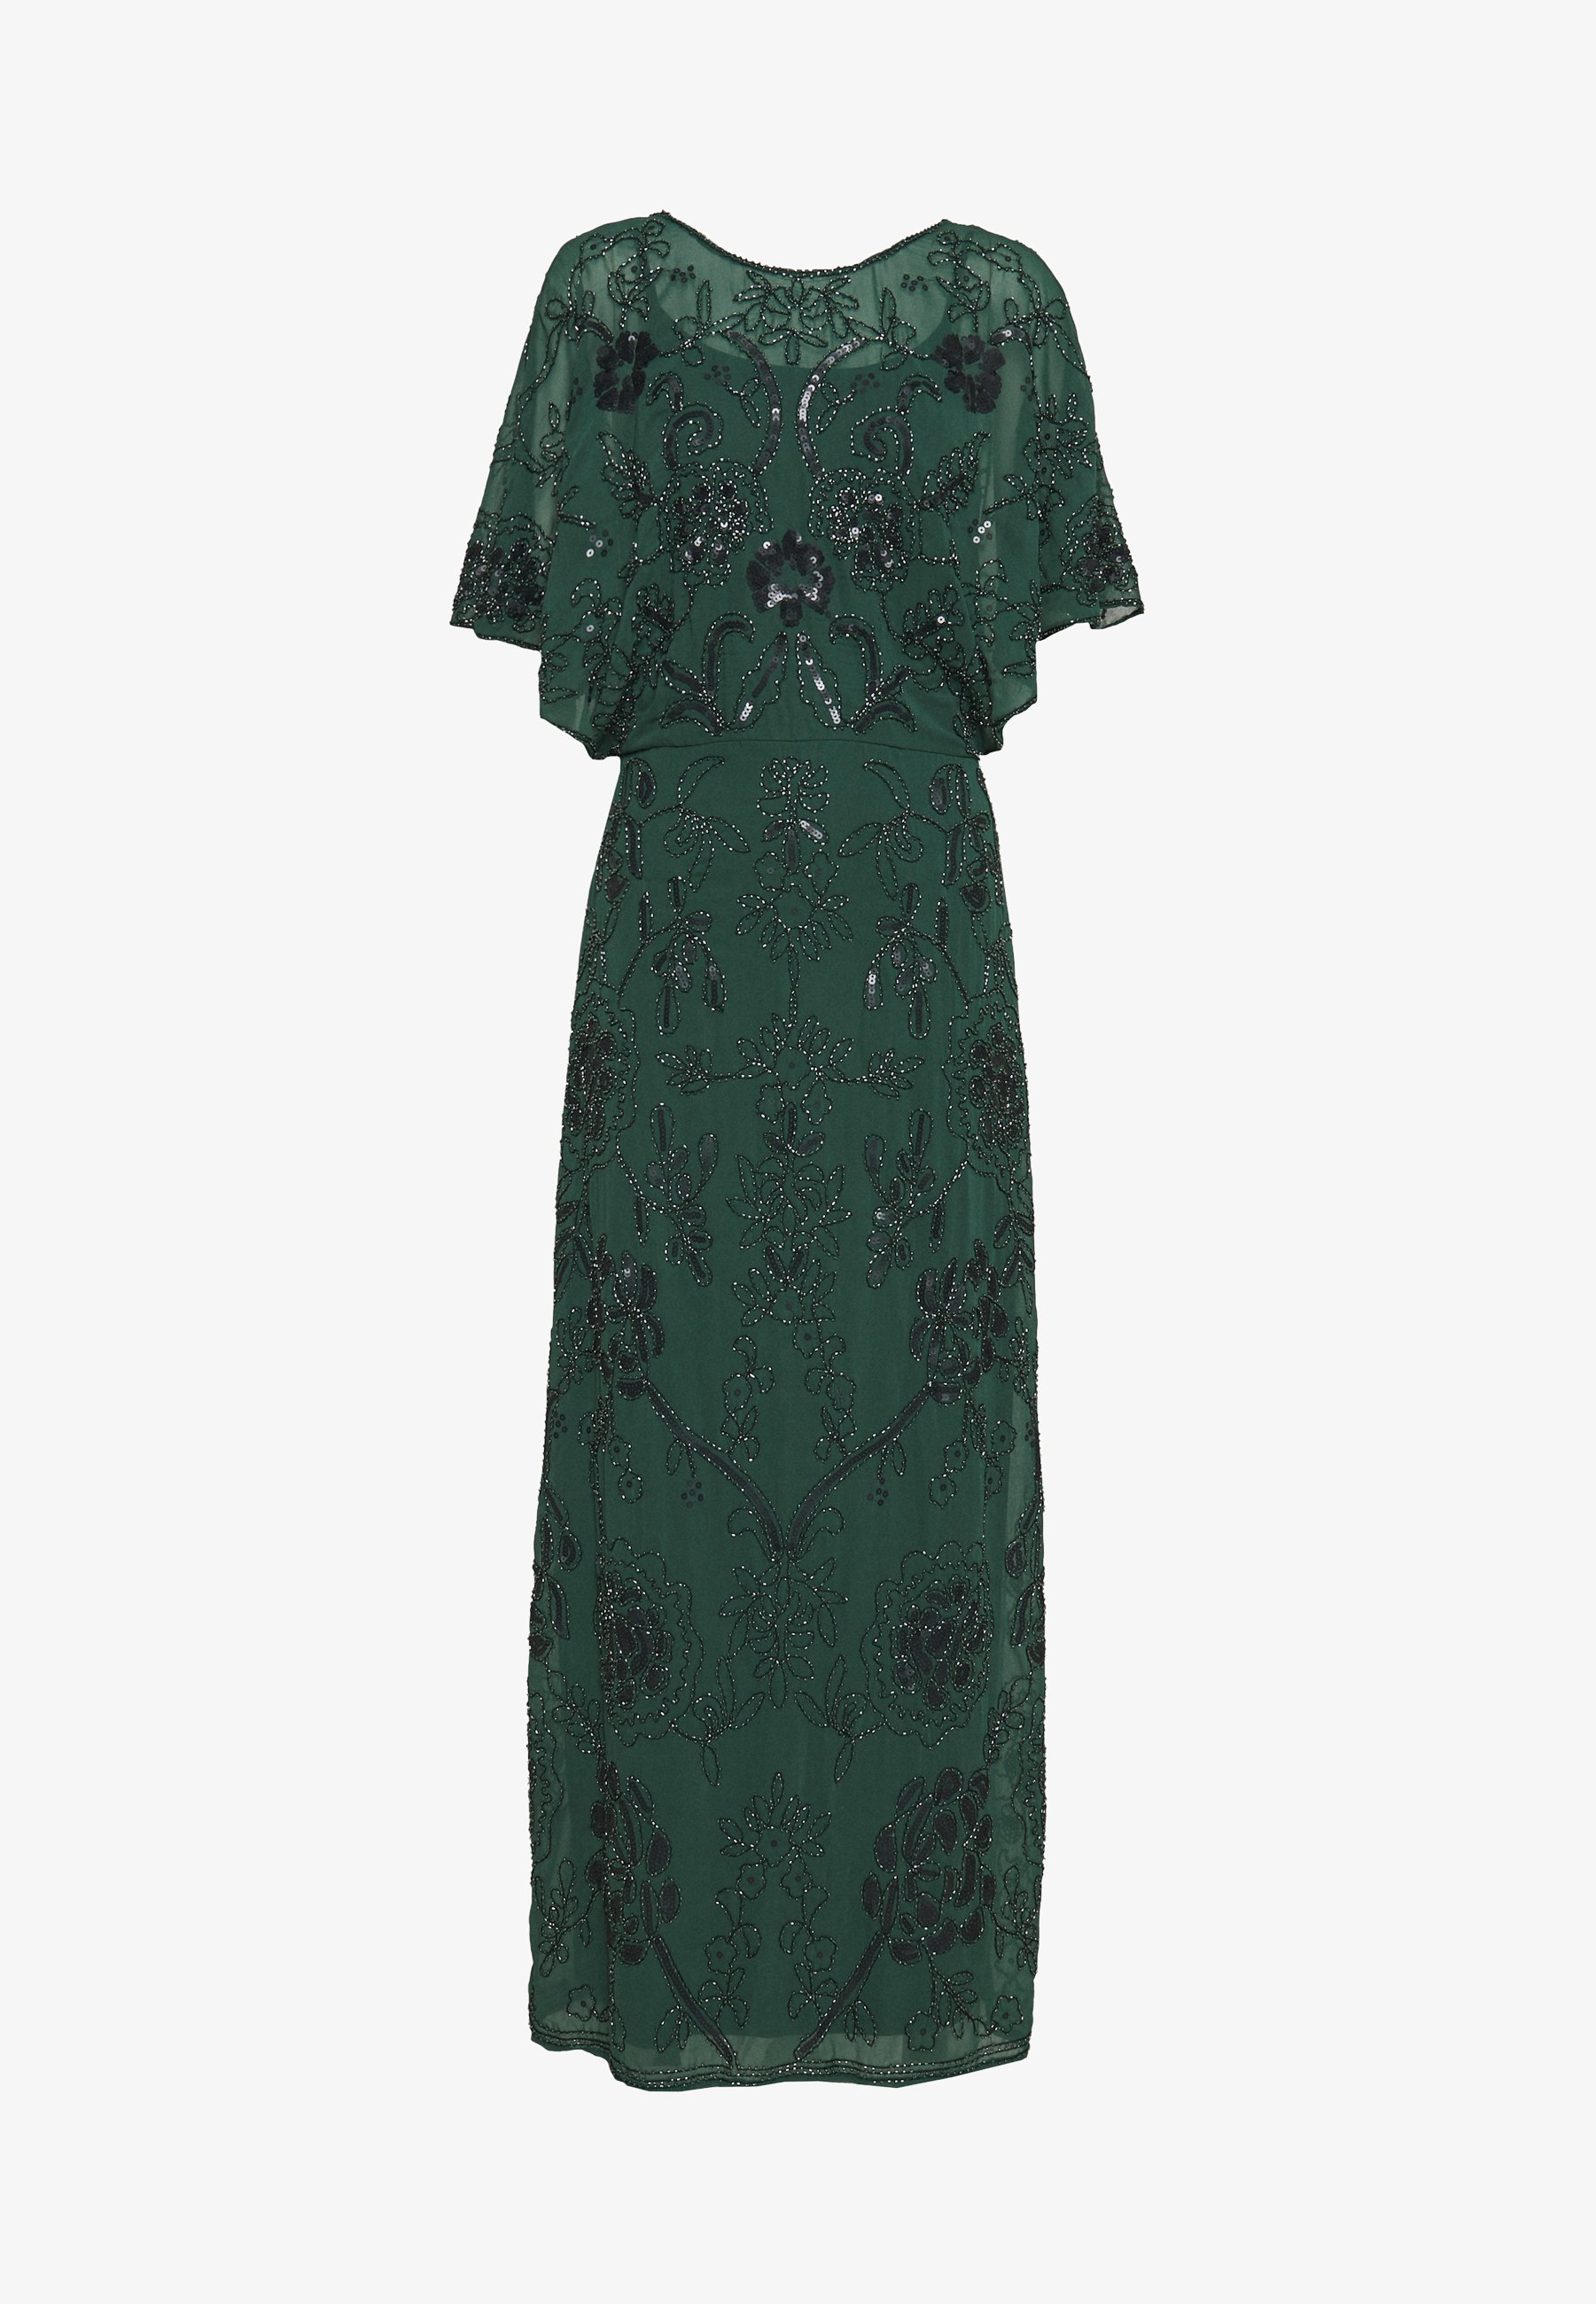 Vestido de fiesta verde oscuro bordado de Molly Bracken. De venta en Zalando (109,95 euros).